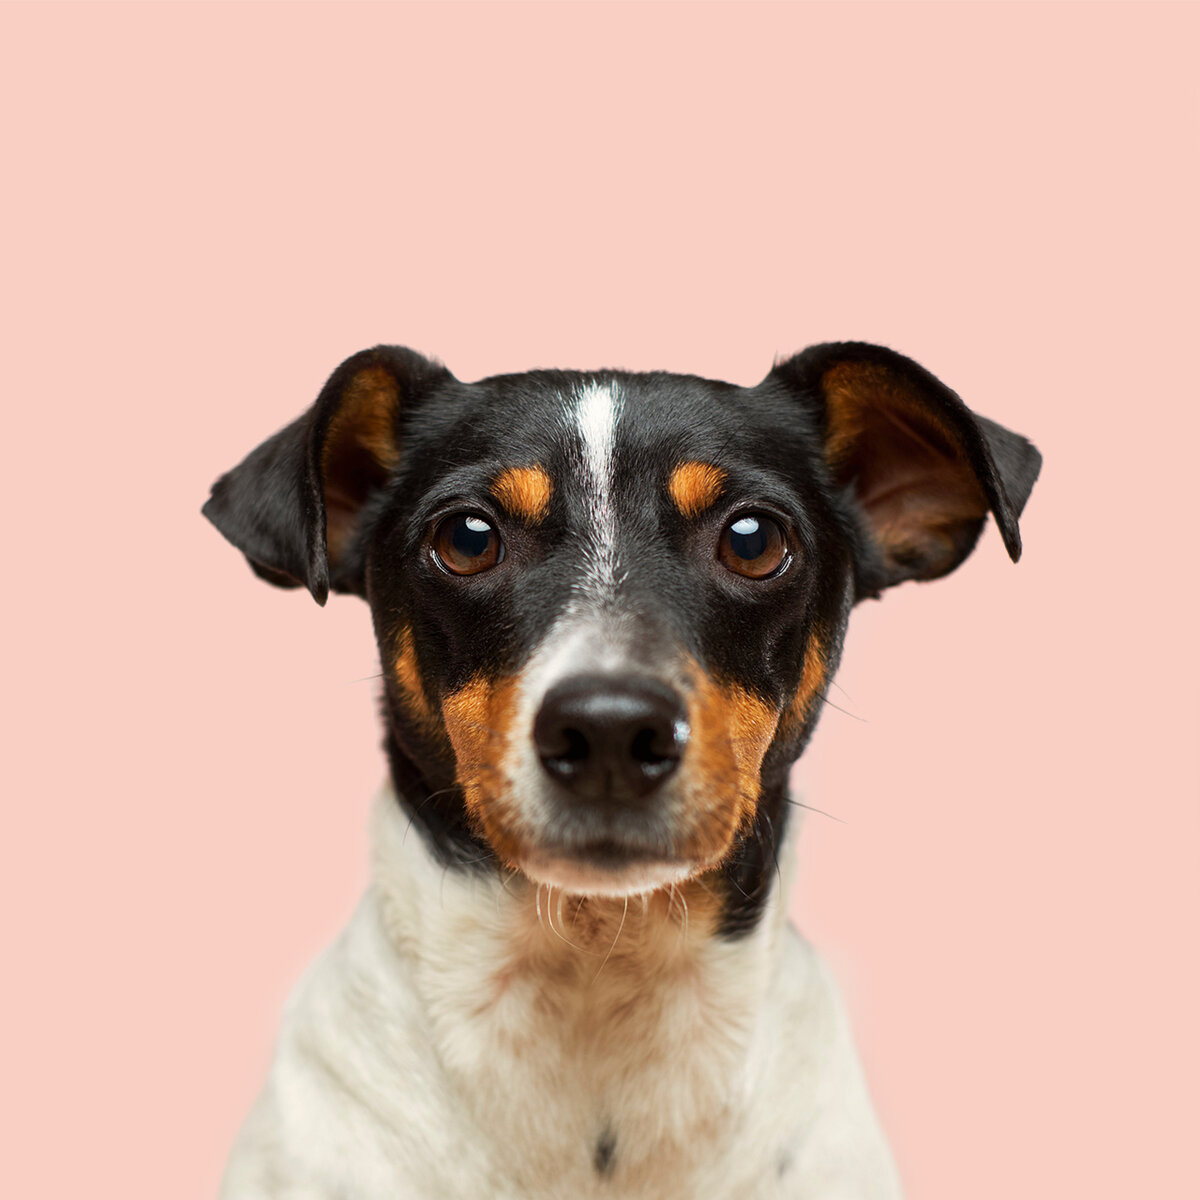 Portrait eines kleinen Hundes vor rosa Hintergrund.